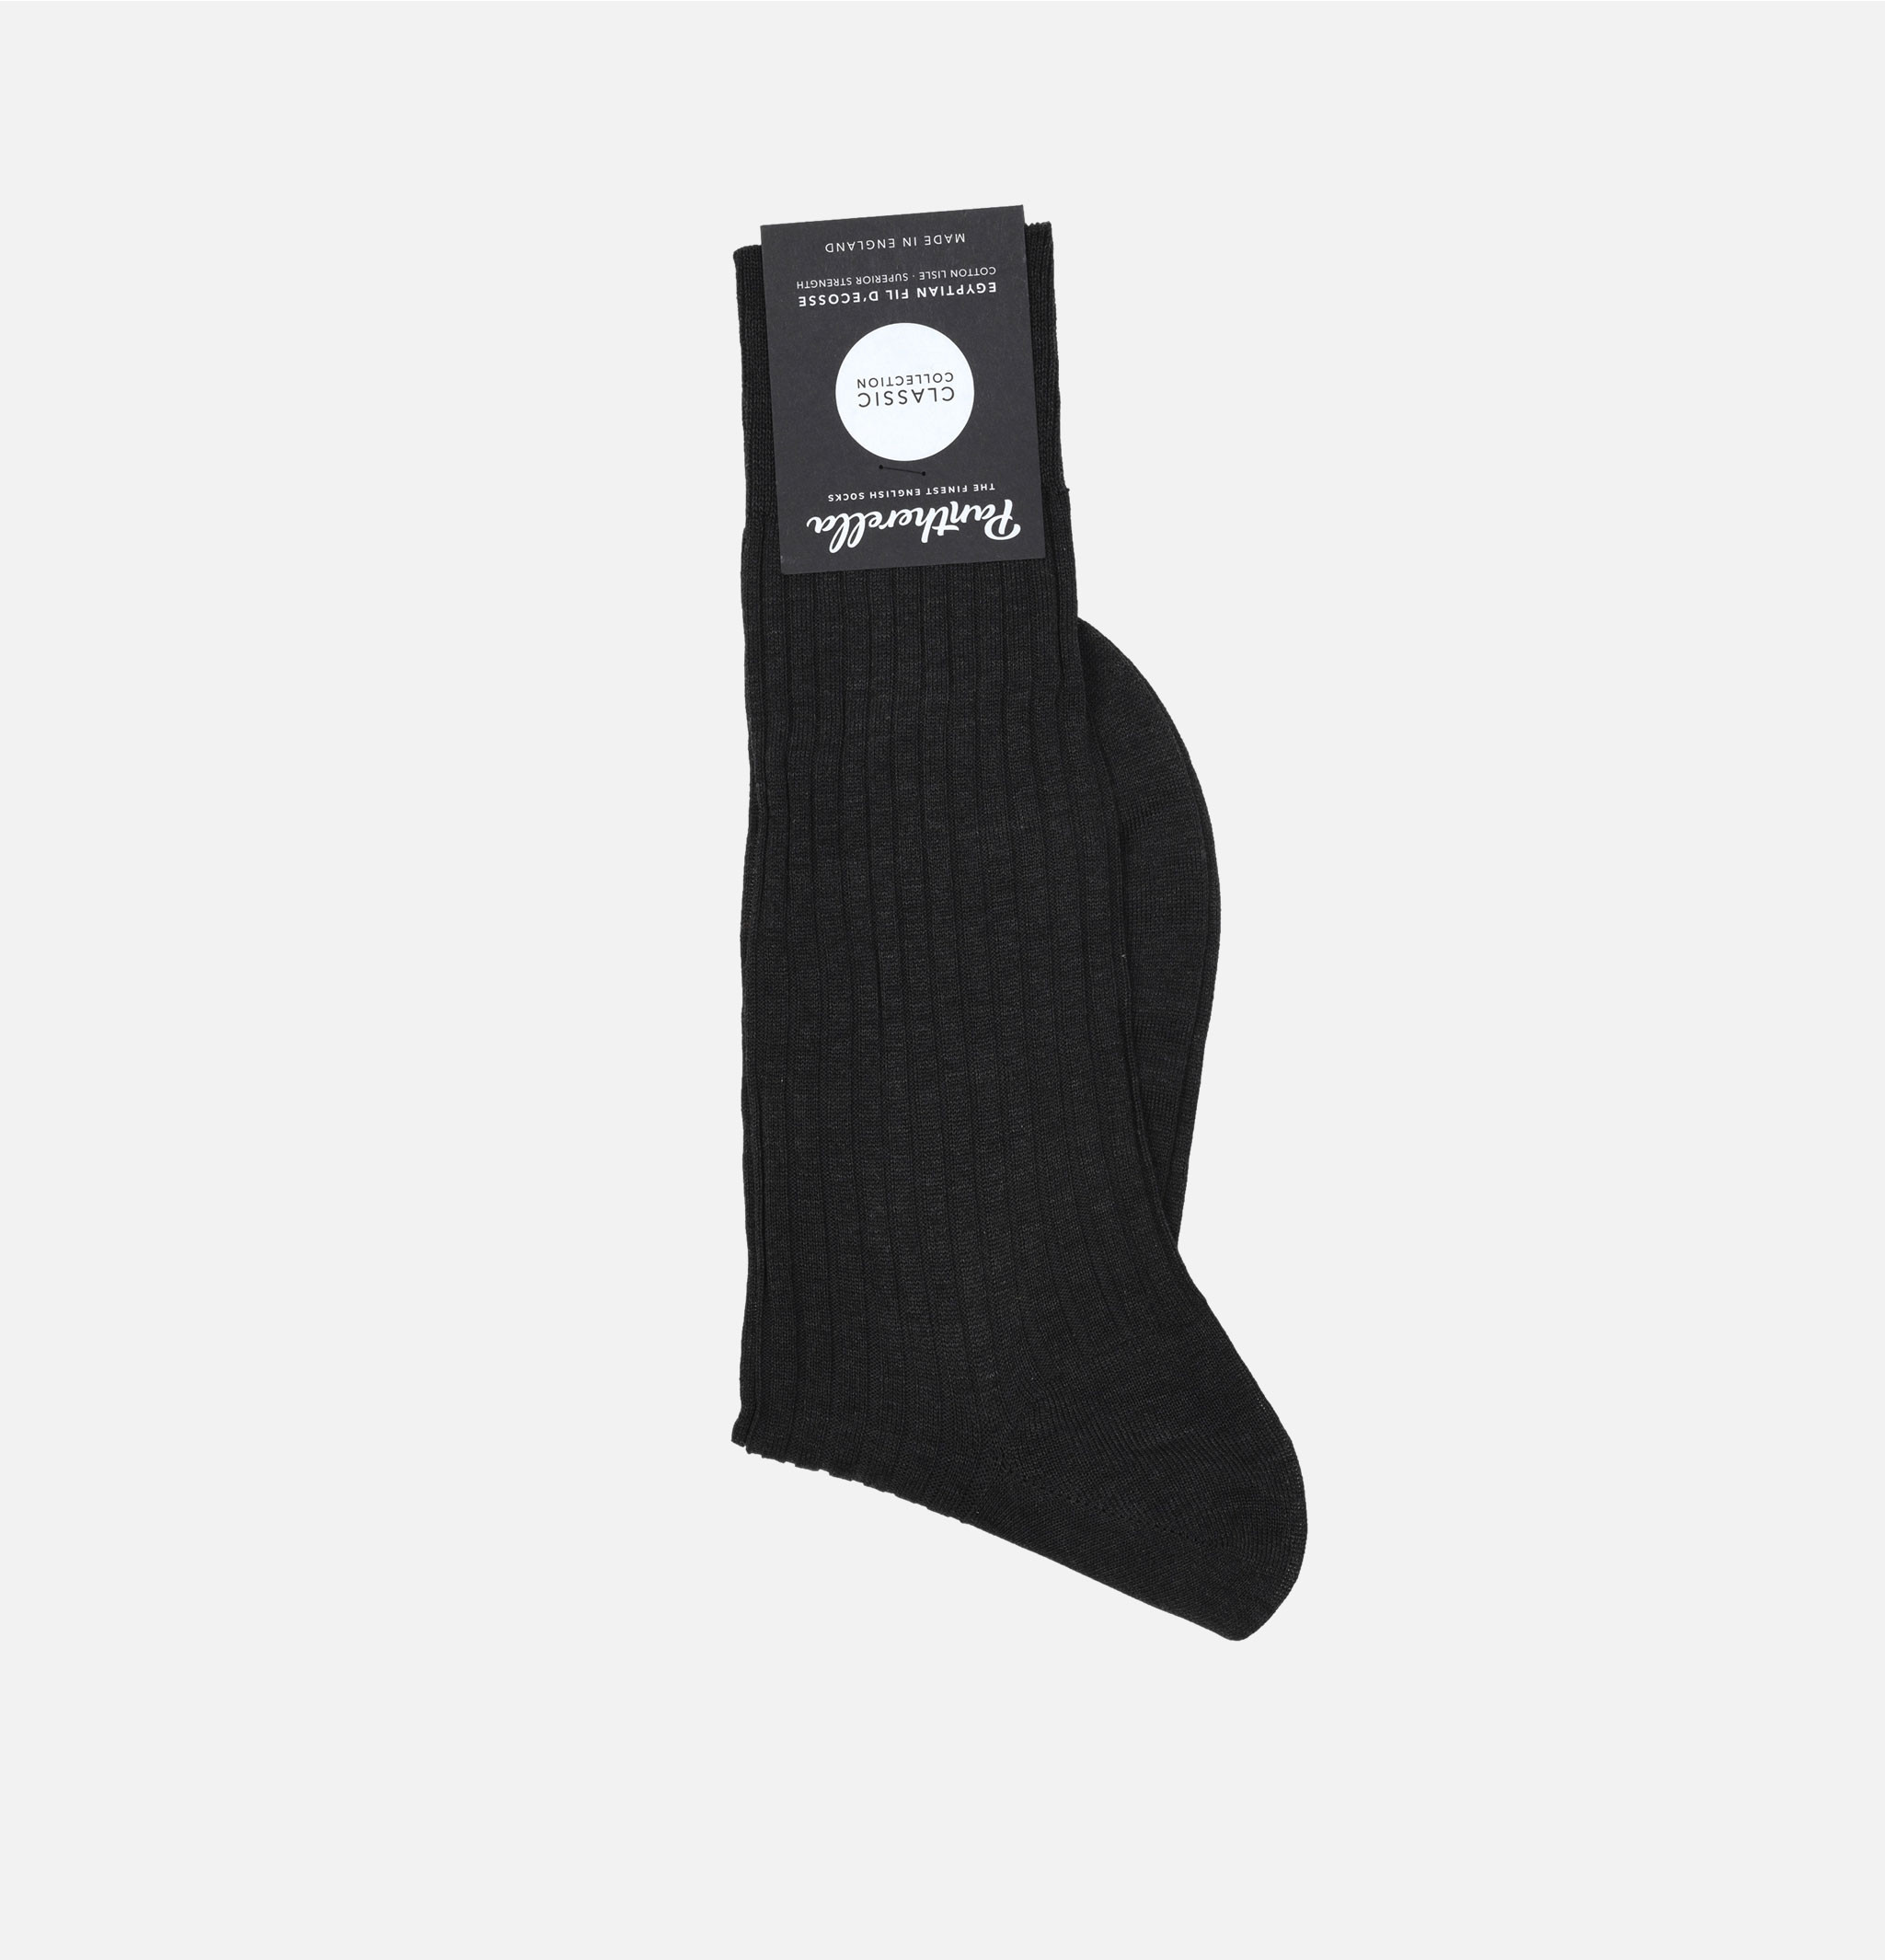 Pantherella Danvers Dark Grey Socks